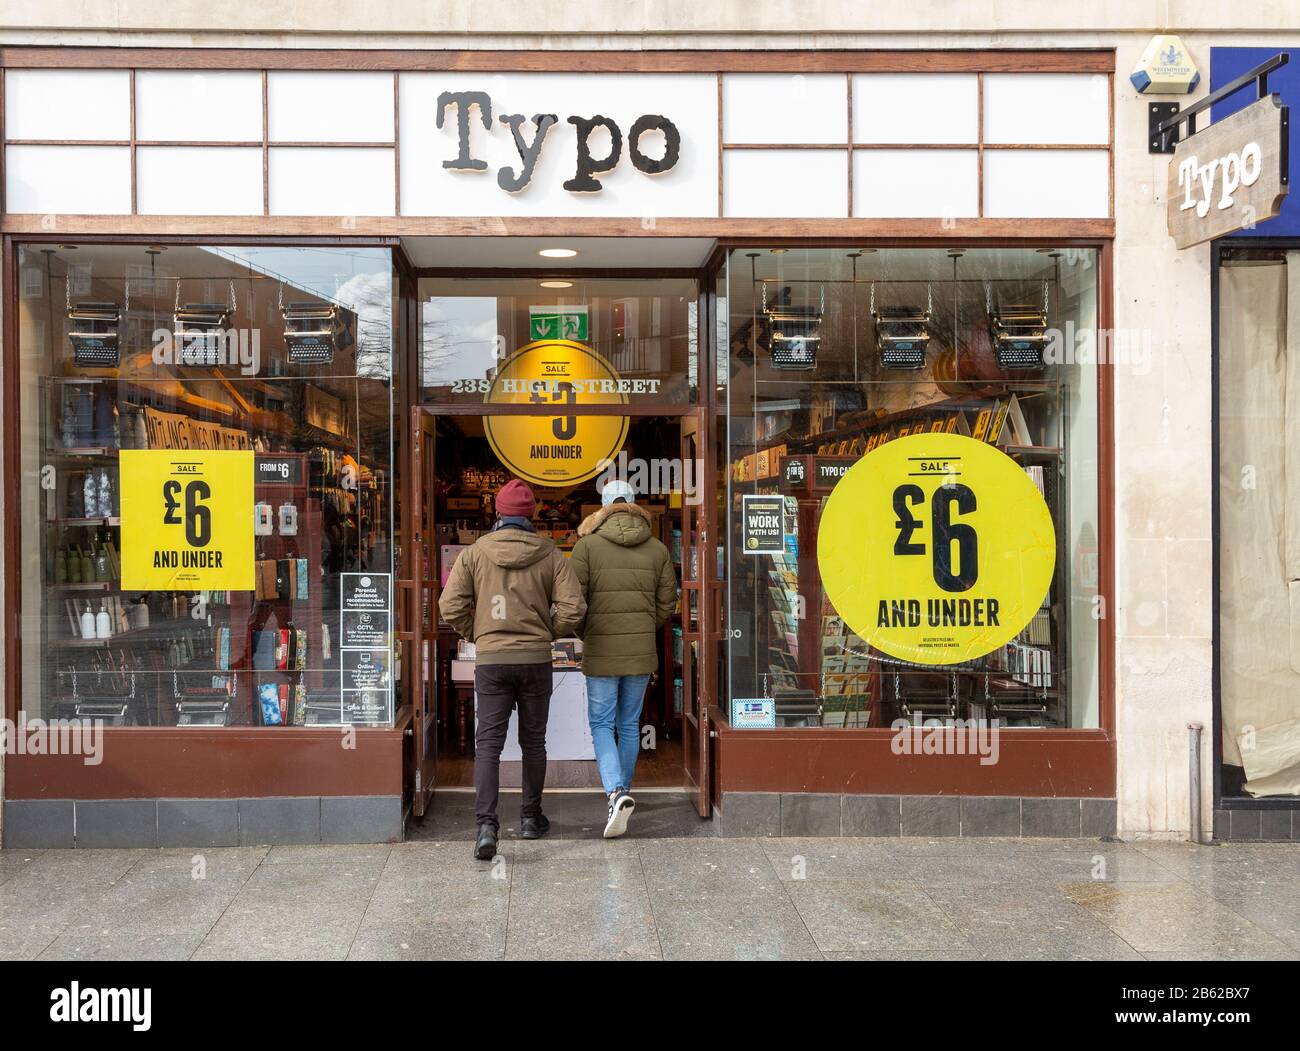 Vendita a Typo negozio nel centro della città High Street negozio, Exeter, Devon, Inghilterra, Regno Unito - due persone entrando porta Foto Stock